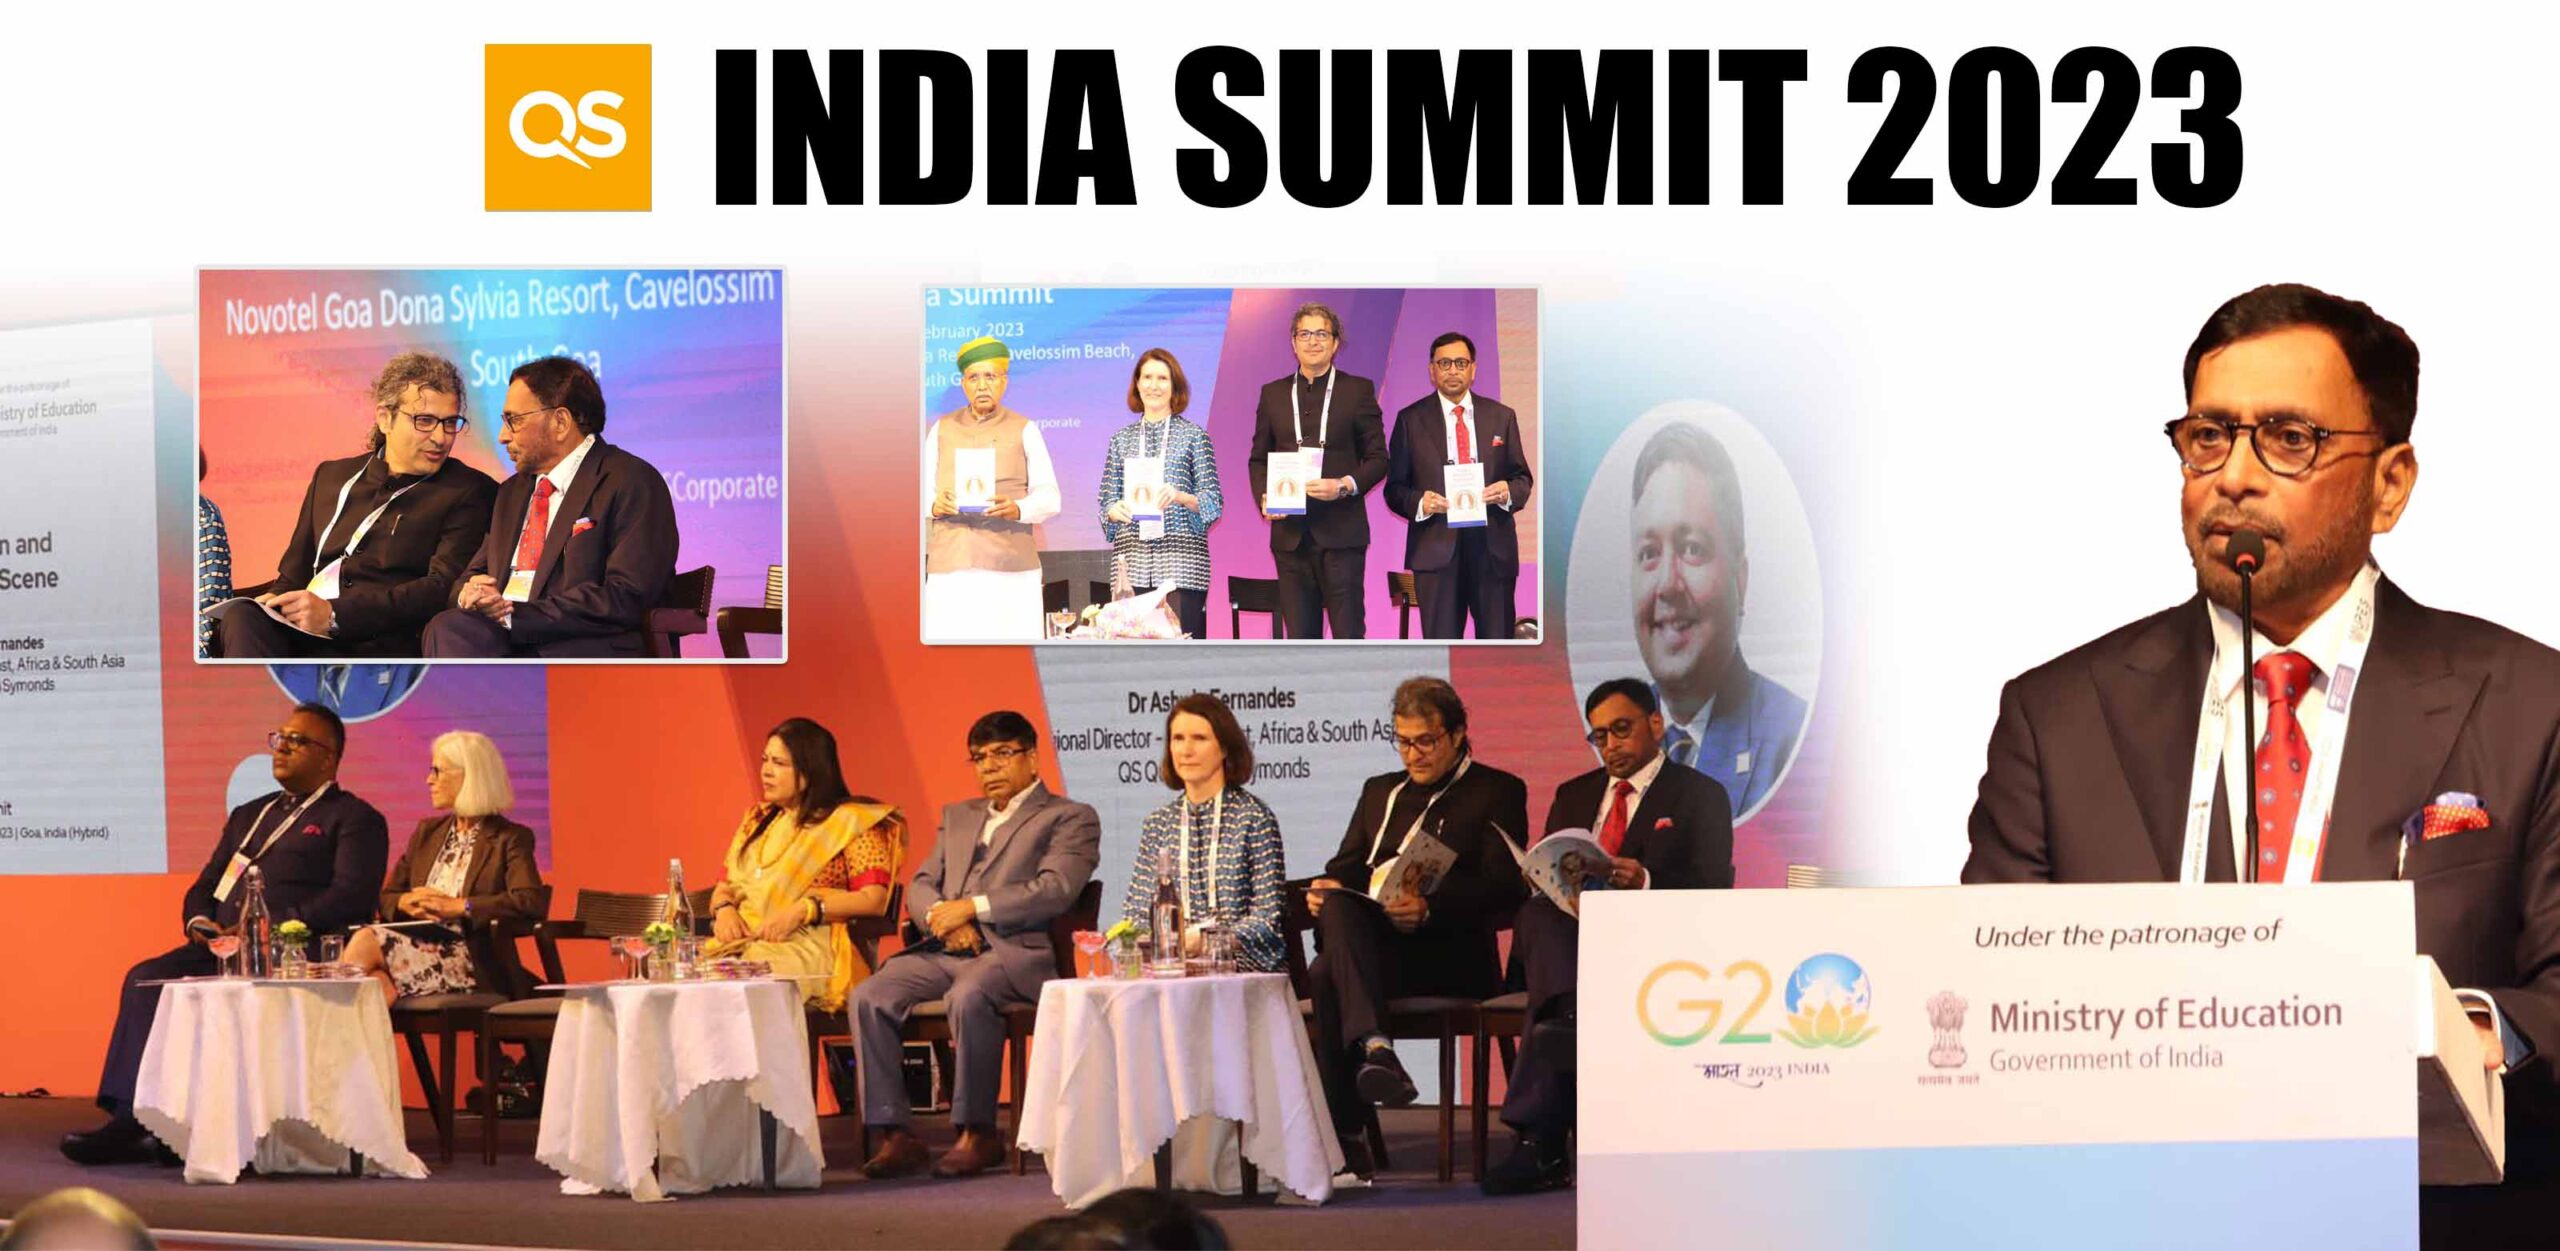 Keynote Address at QS India Summit 2023